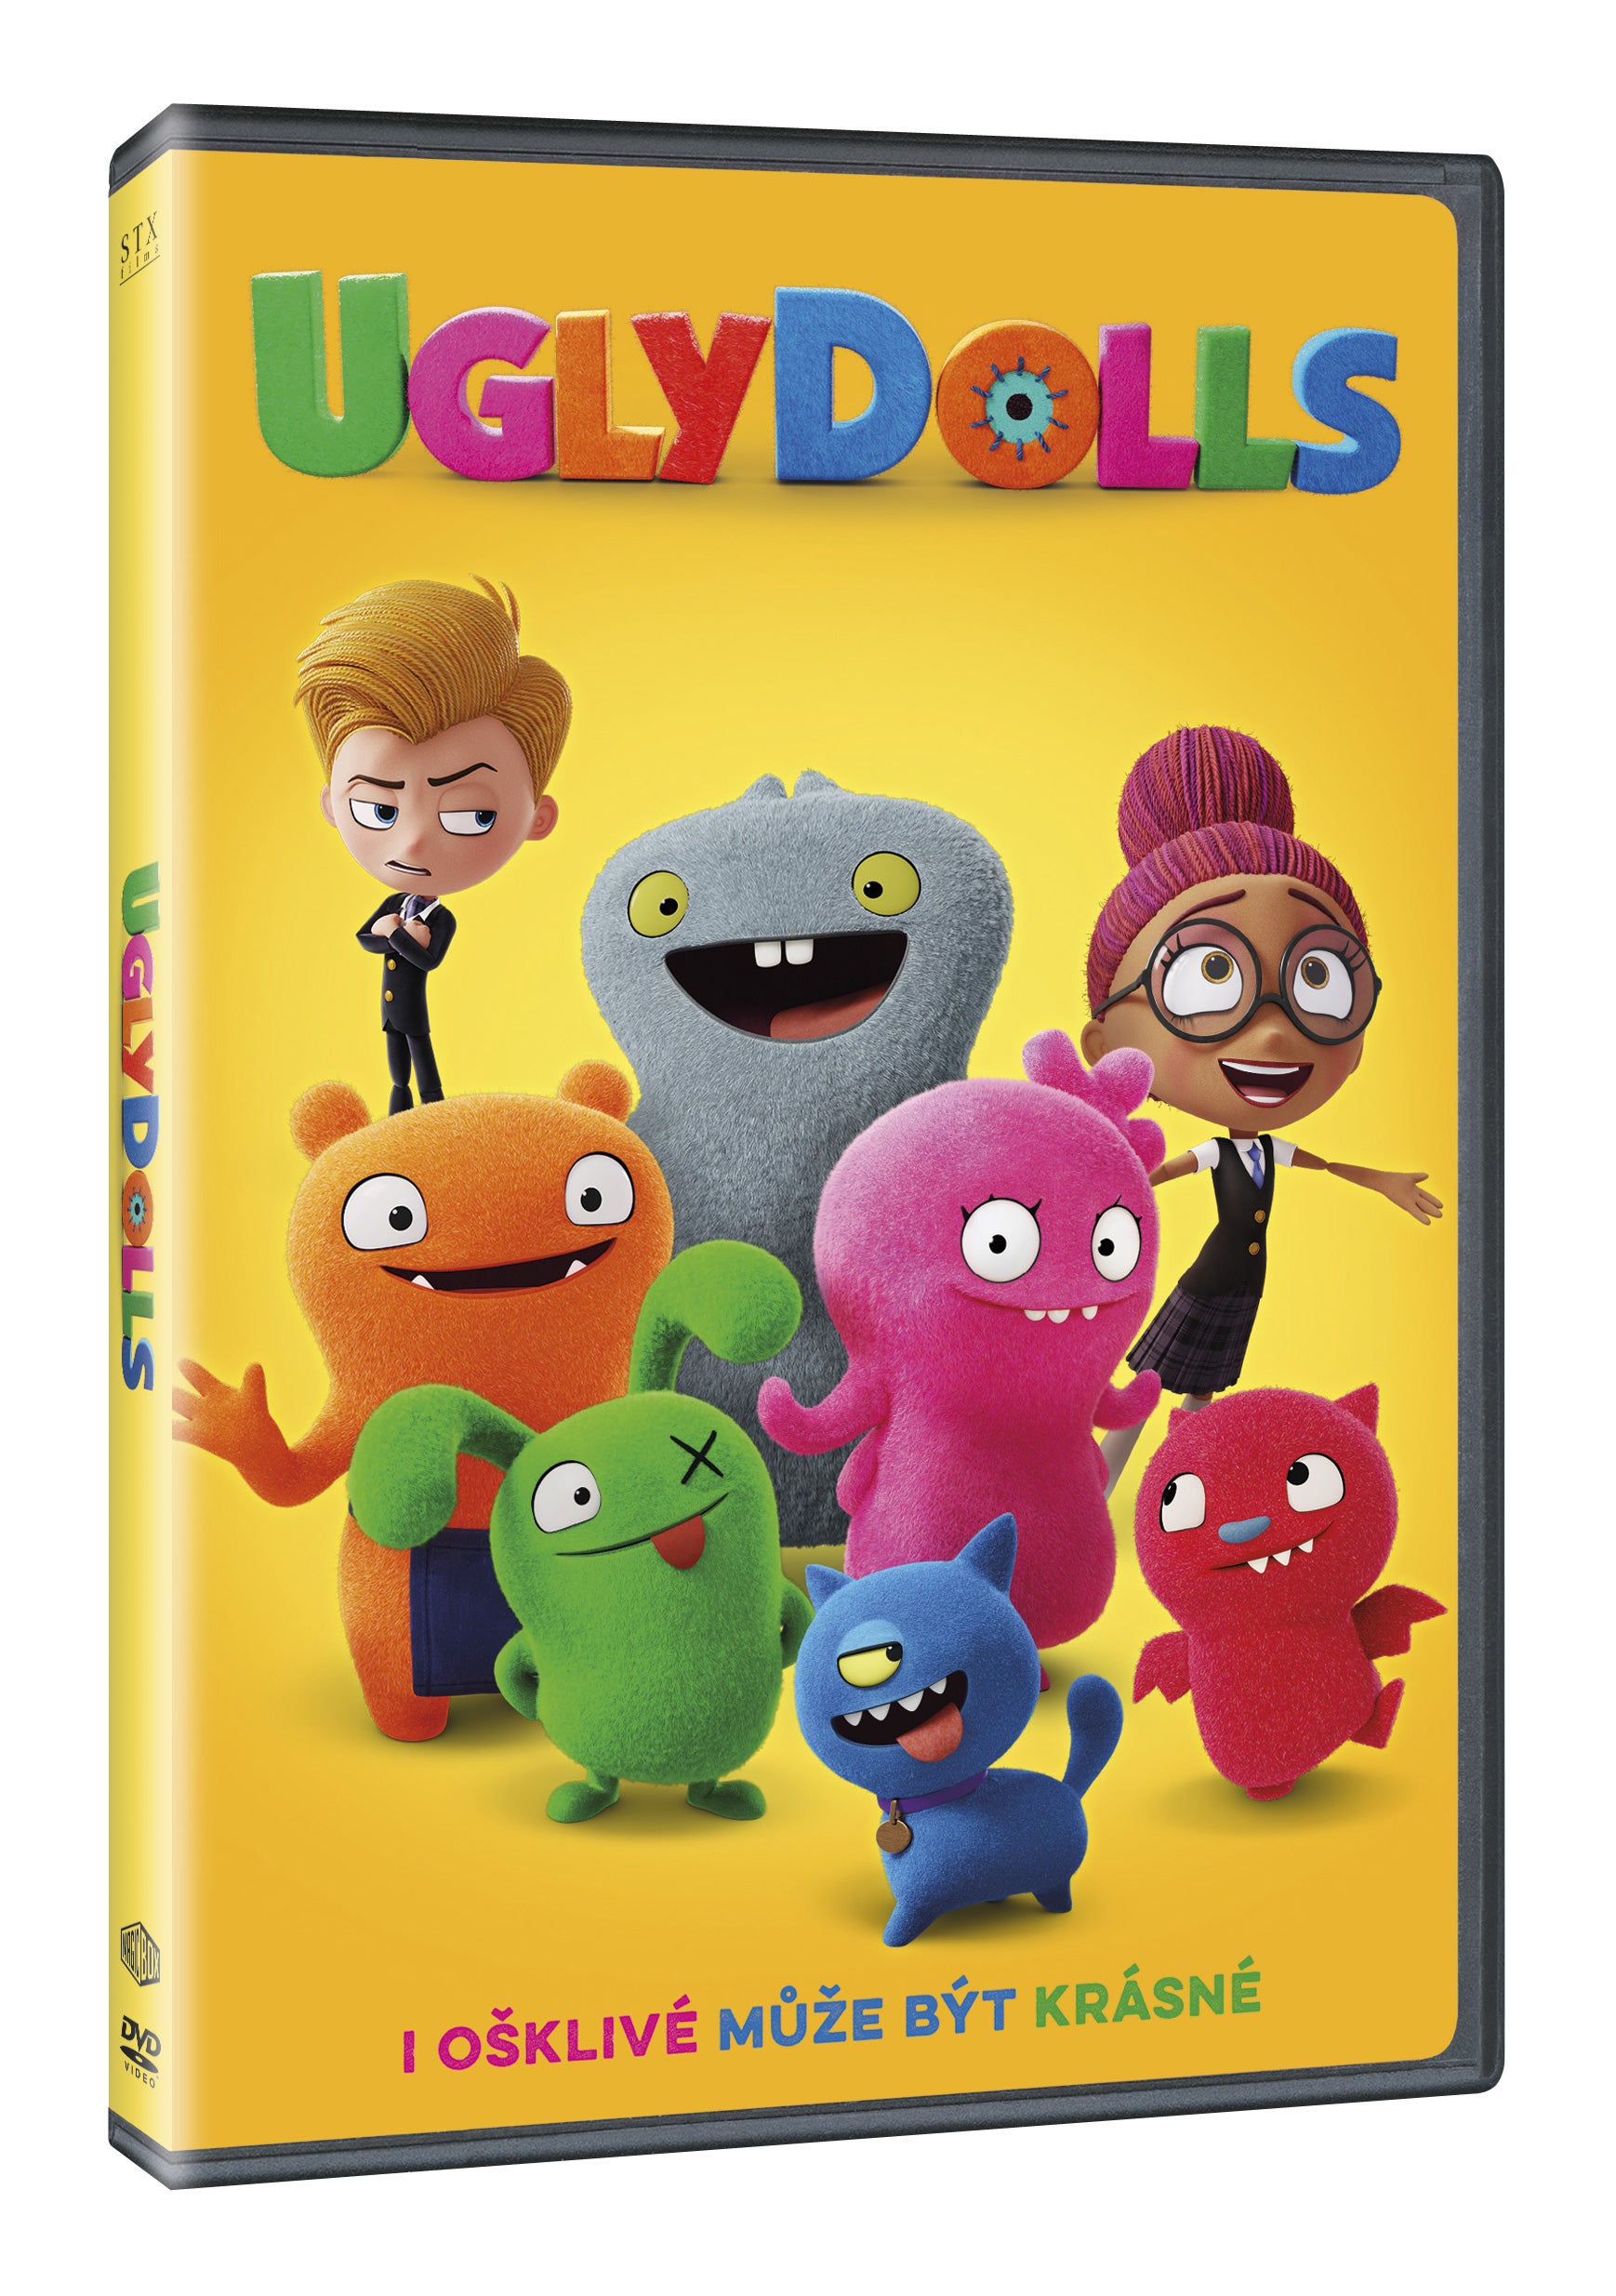 UglyDolls DVD / UglyDolls